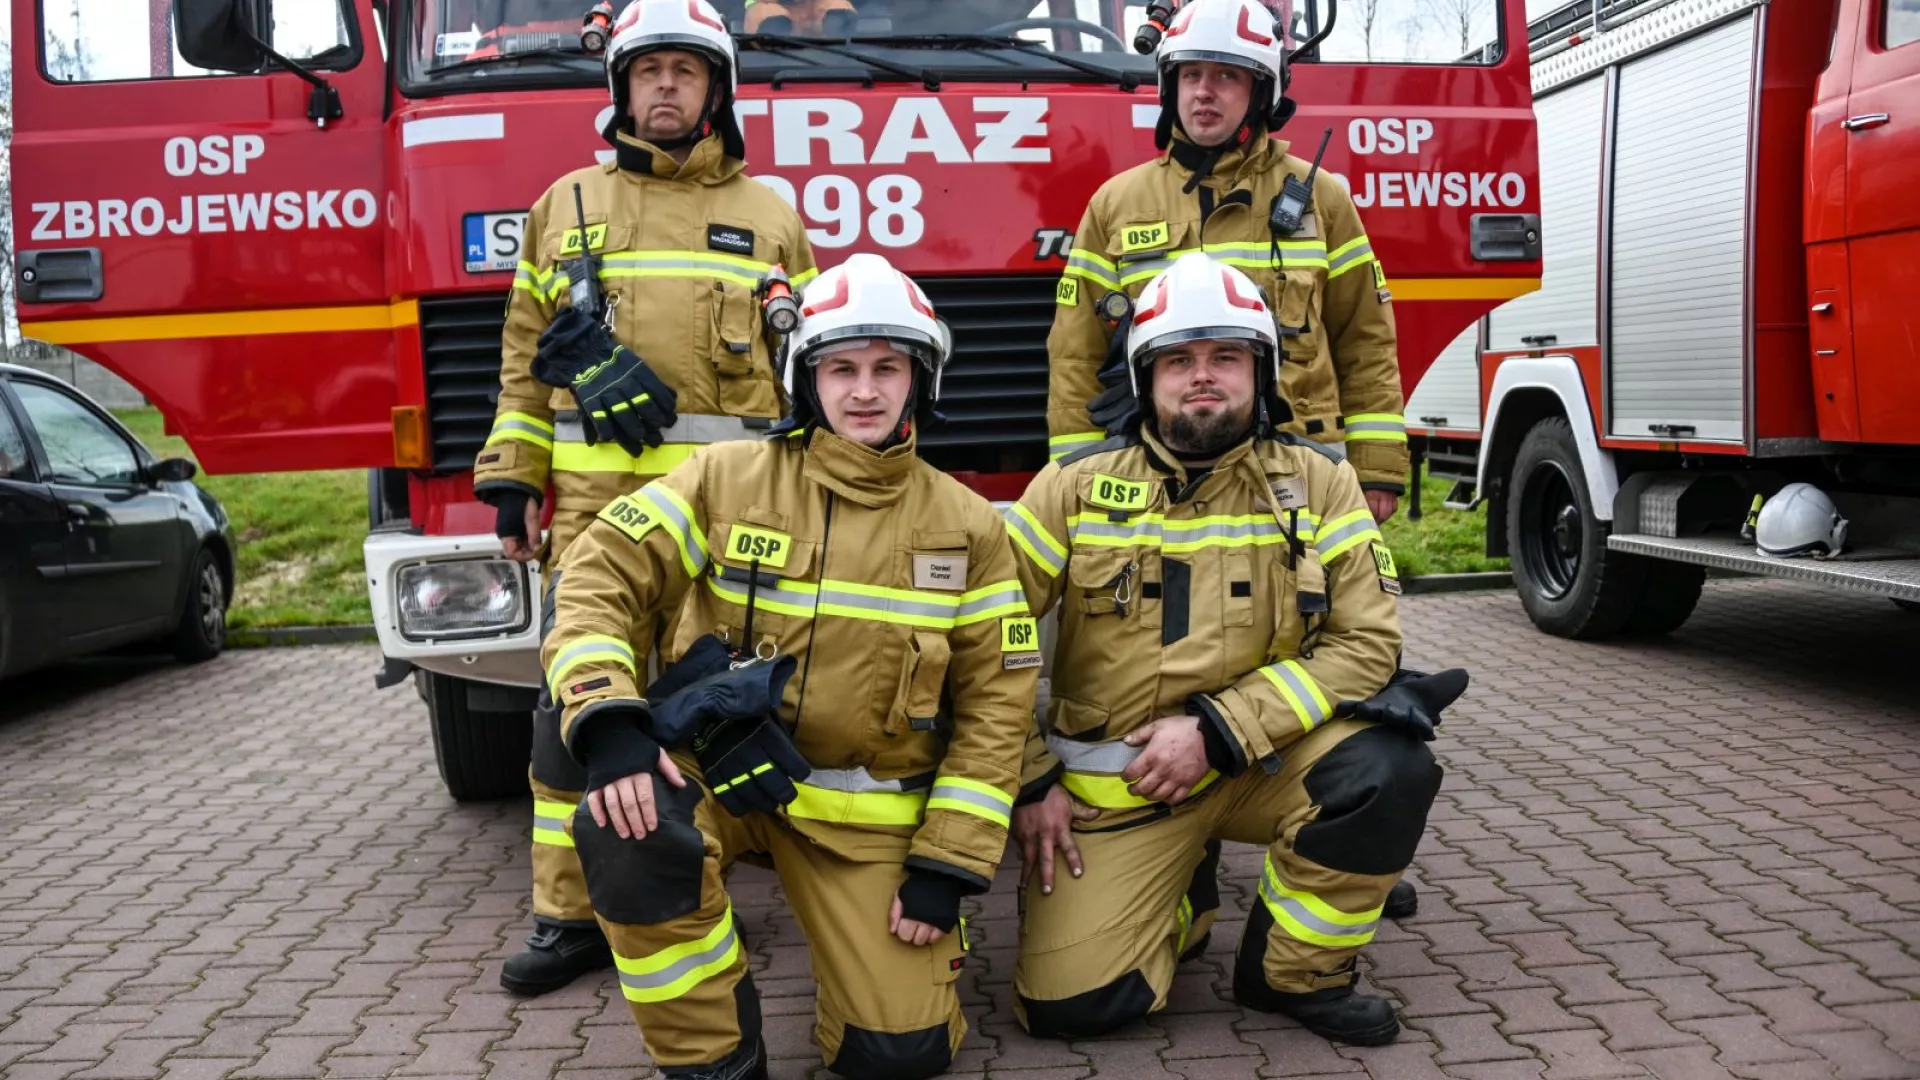 Strażacy OSP Zbrojewsko na tle samochodu strażackiego